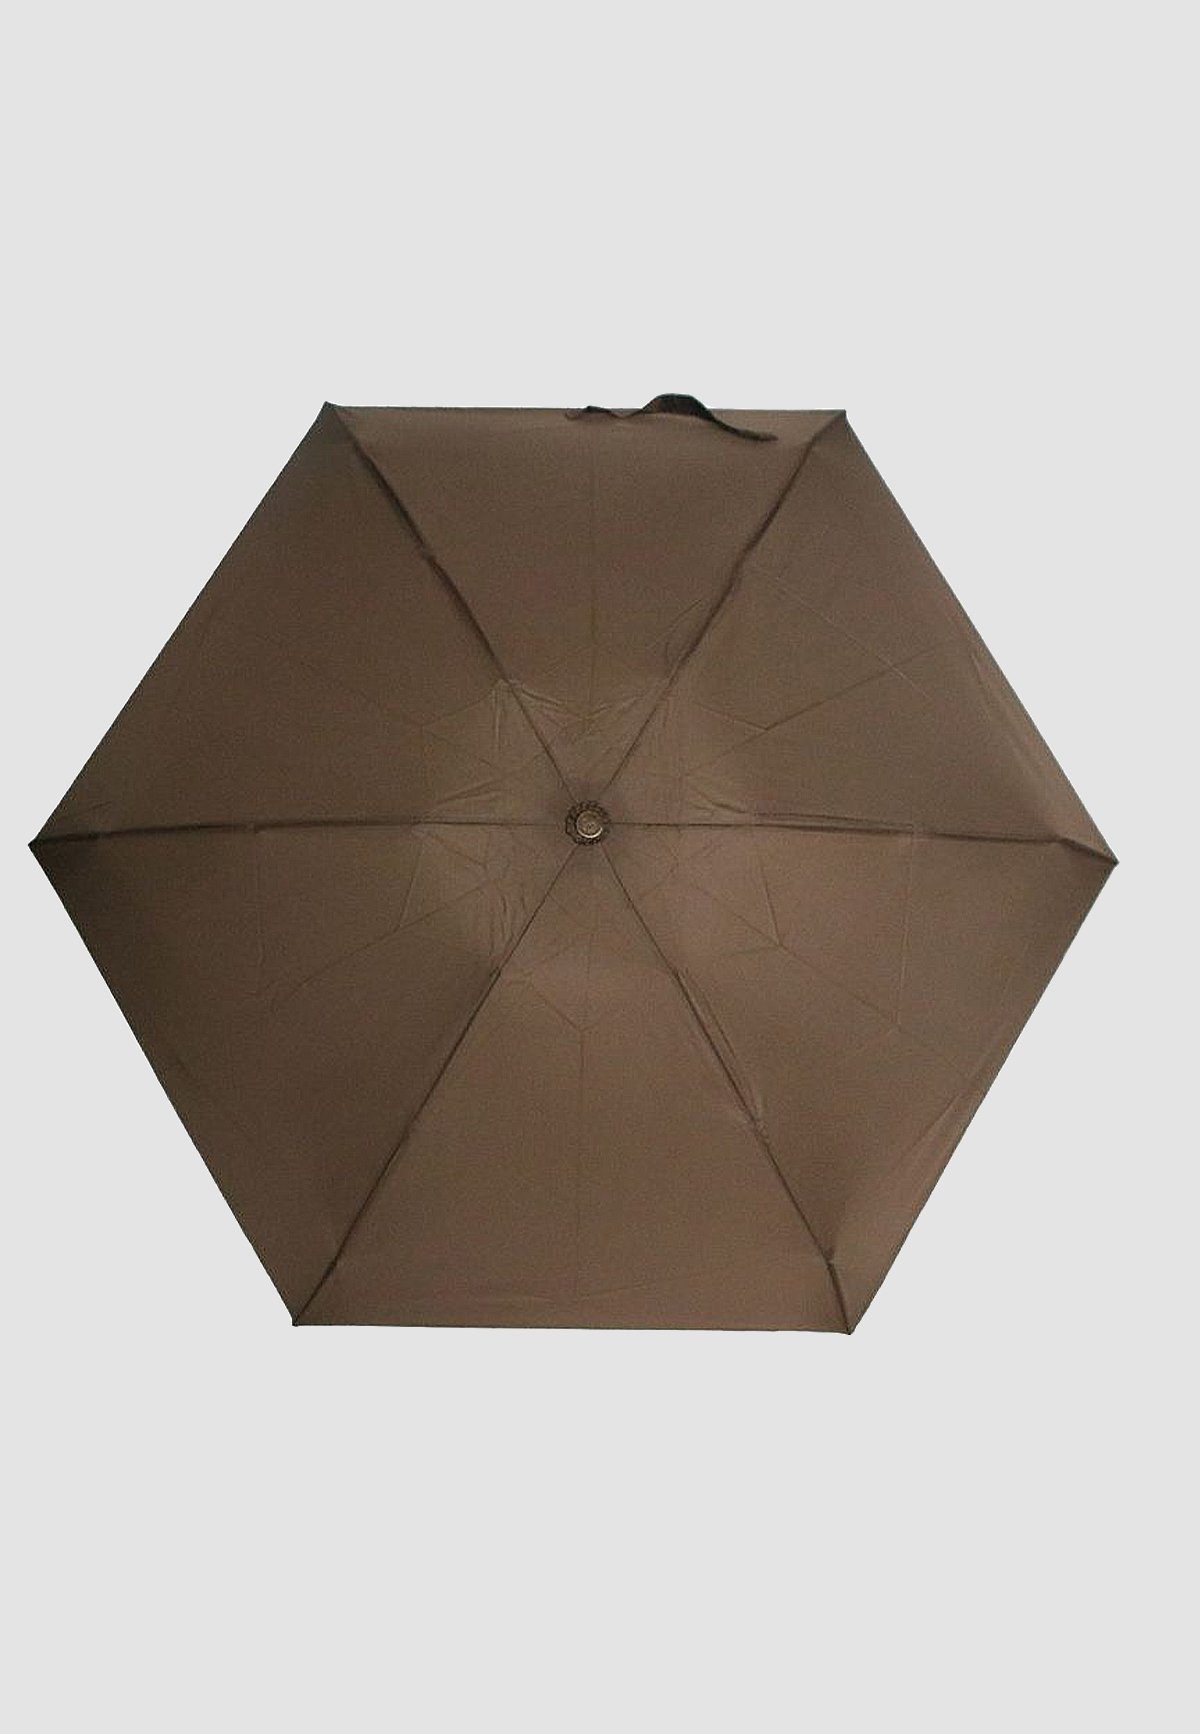 ANELY Taschenregenschirm Kleiner Taschen Regenschirm Leichte Braun 4683 Ausführung, in